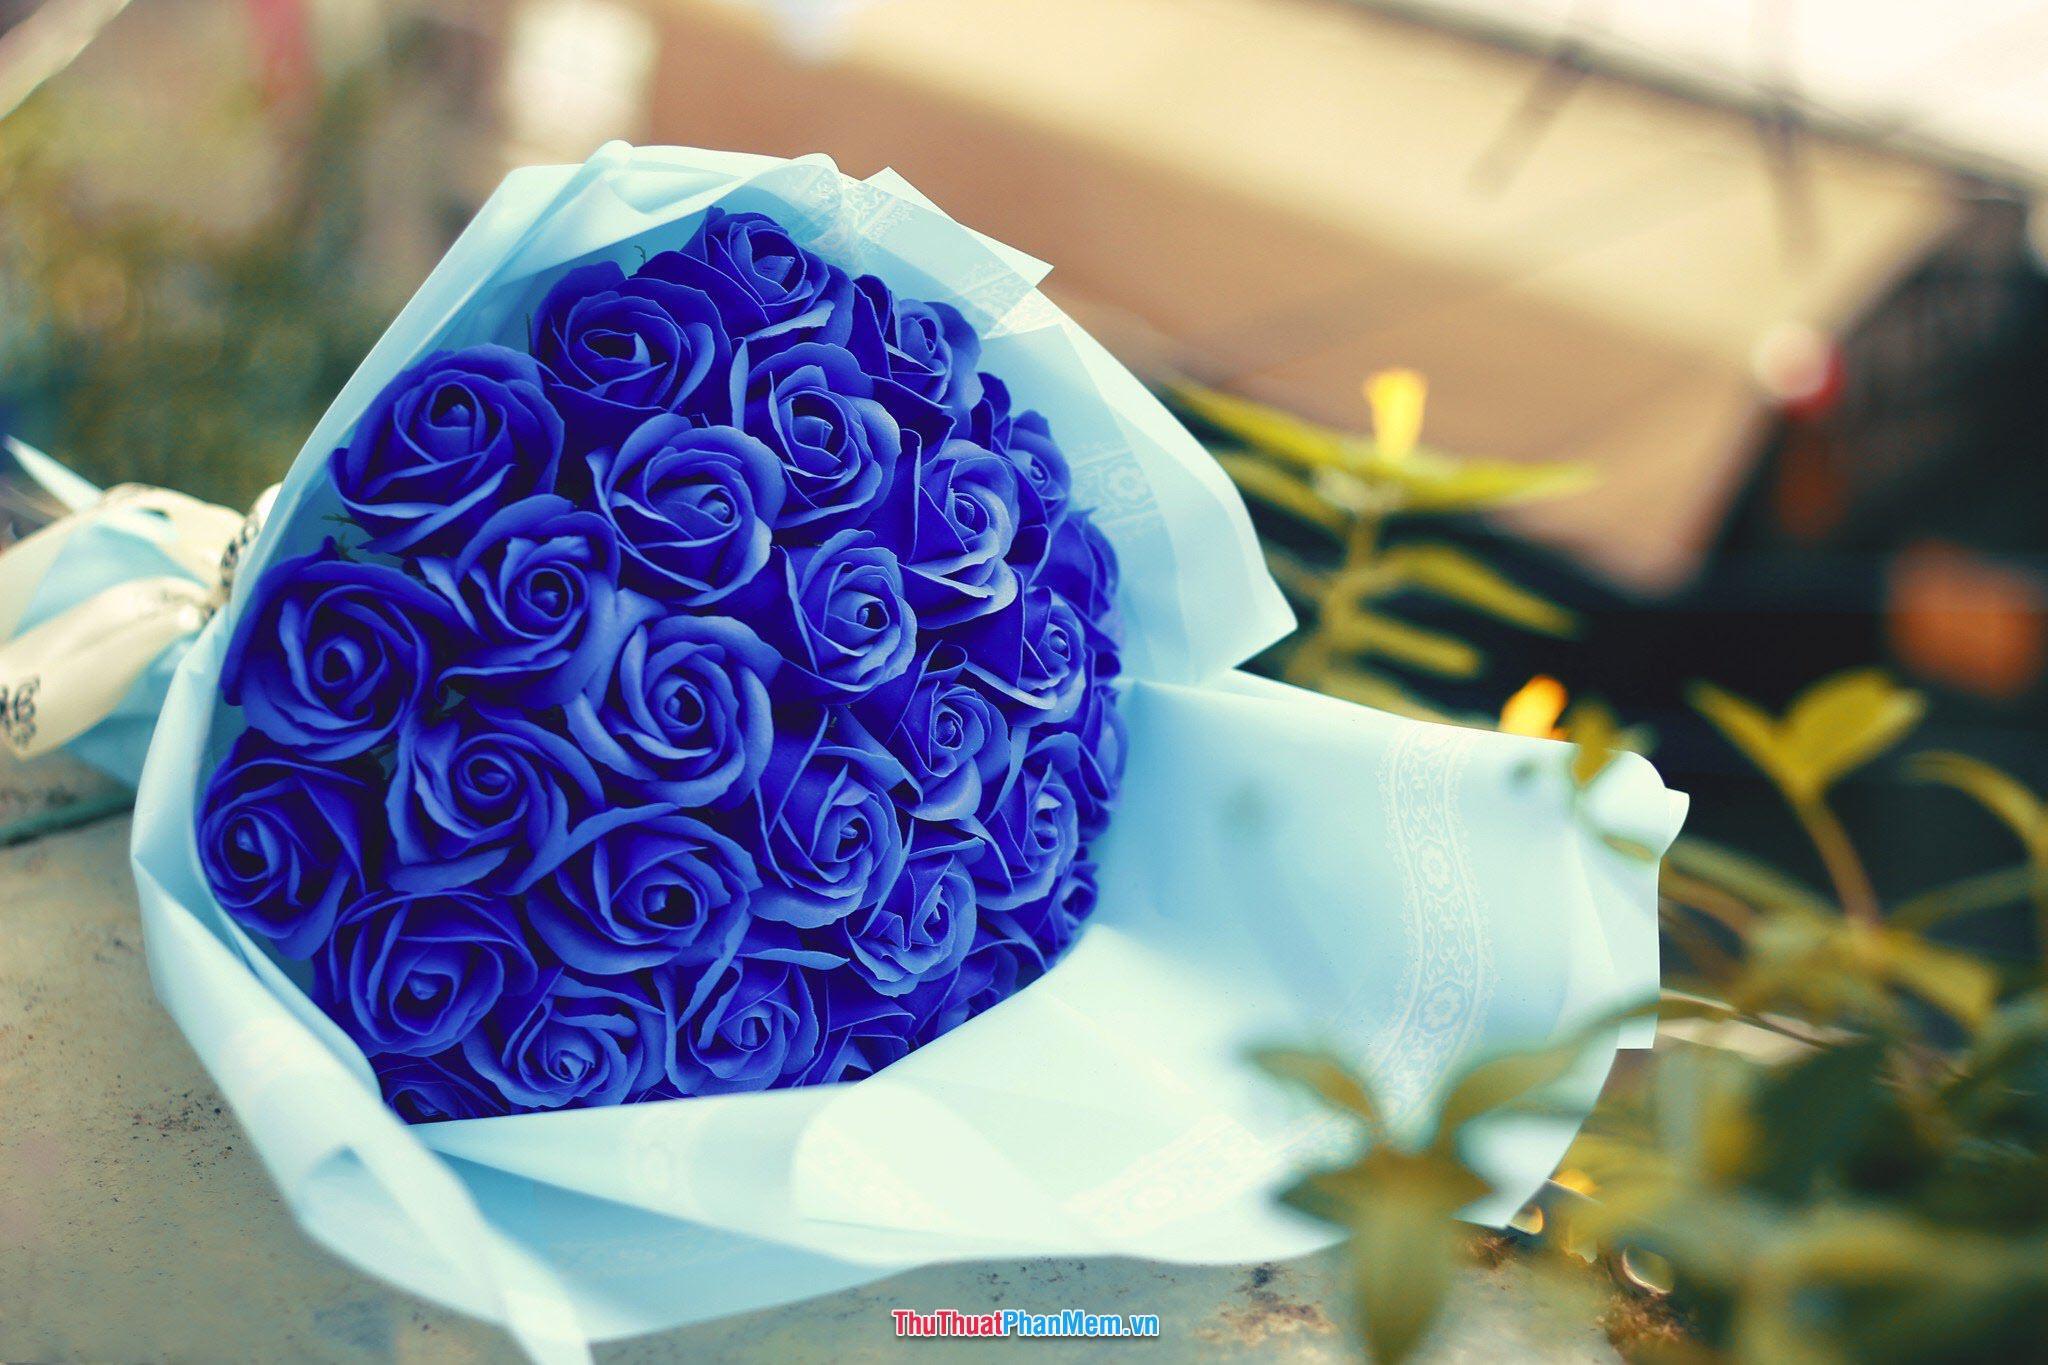 Hoa hồng xanh dành tặng mẹ nhân ngày mùng 8 tháng 3